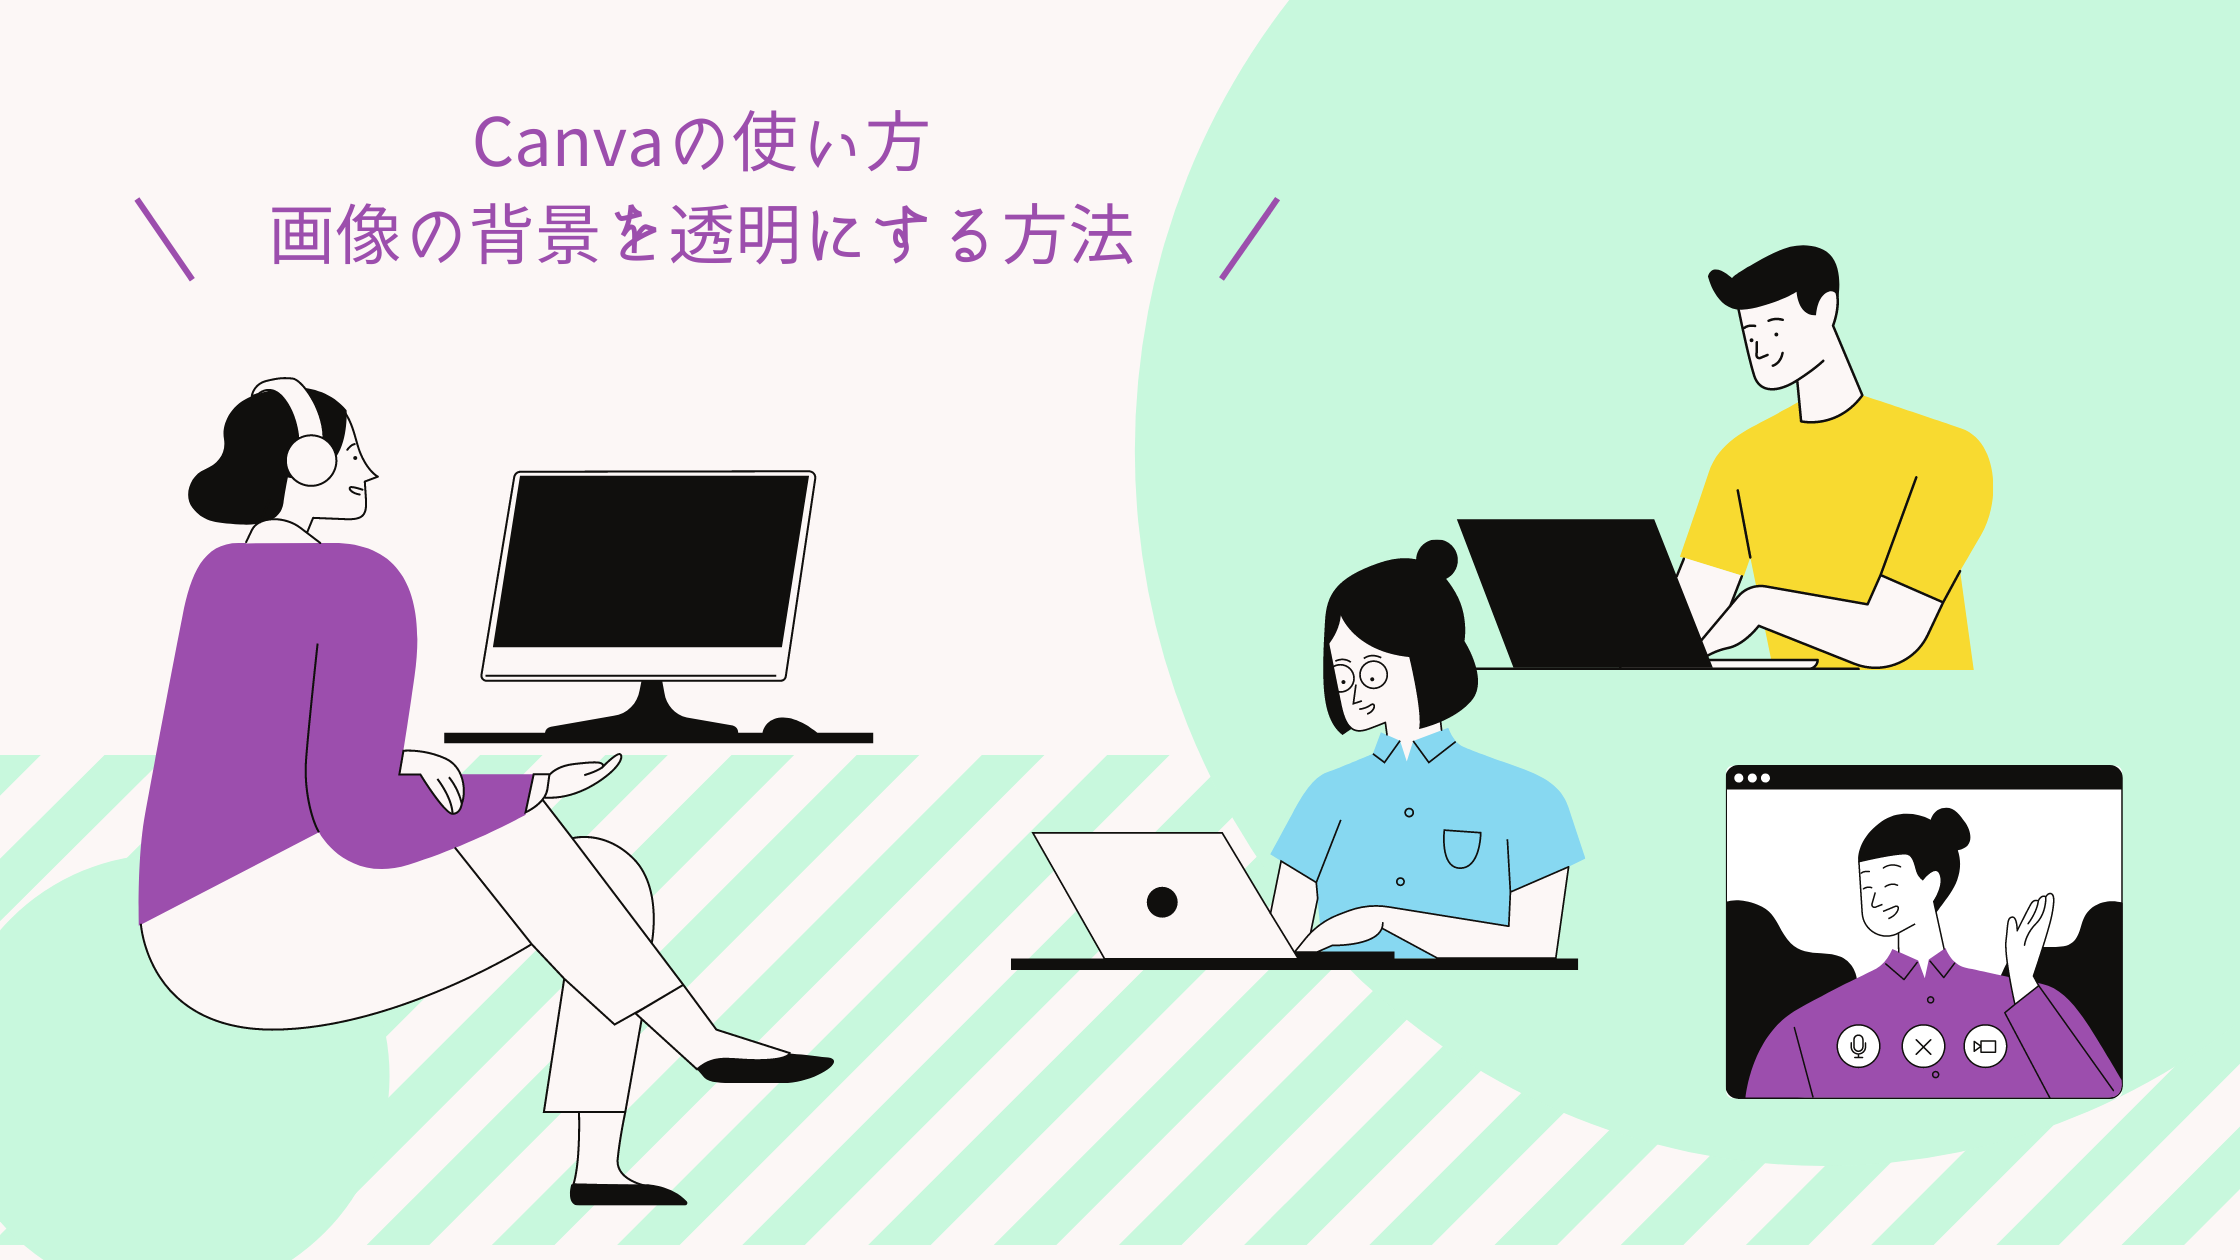 CanvaProで画像の背景を透明にする方法の記事のアイキャッチ